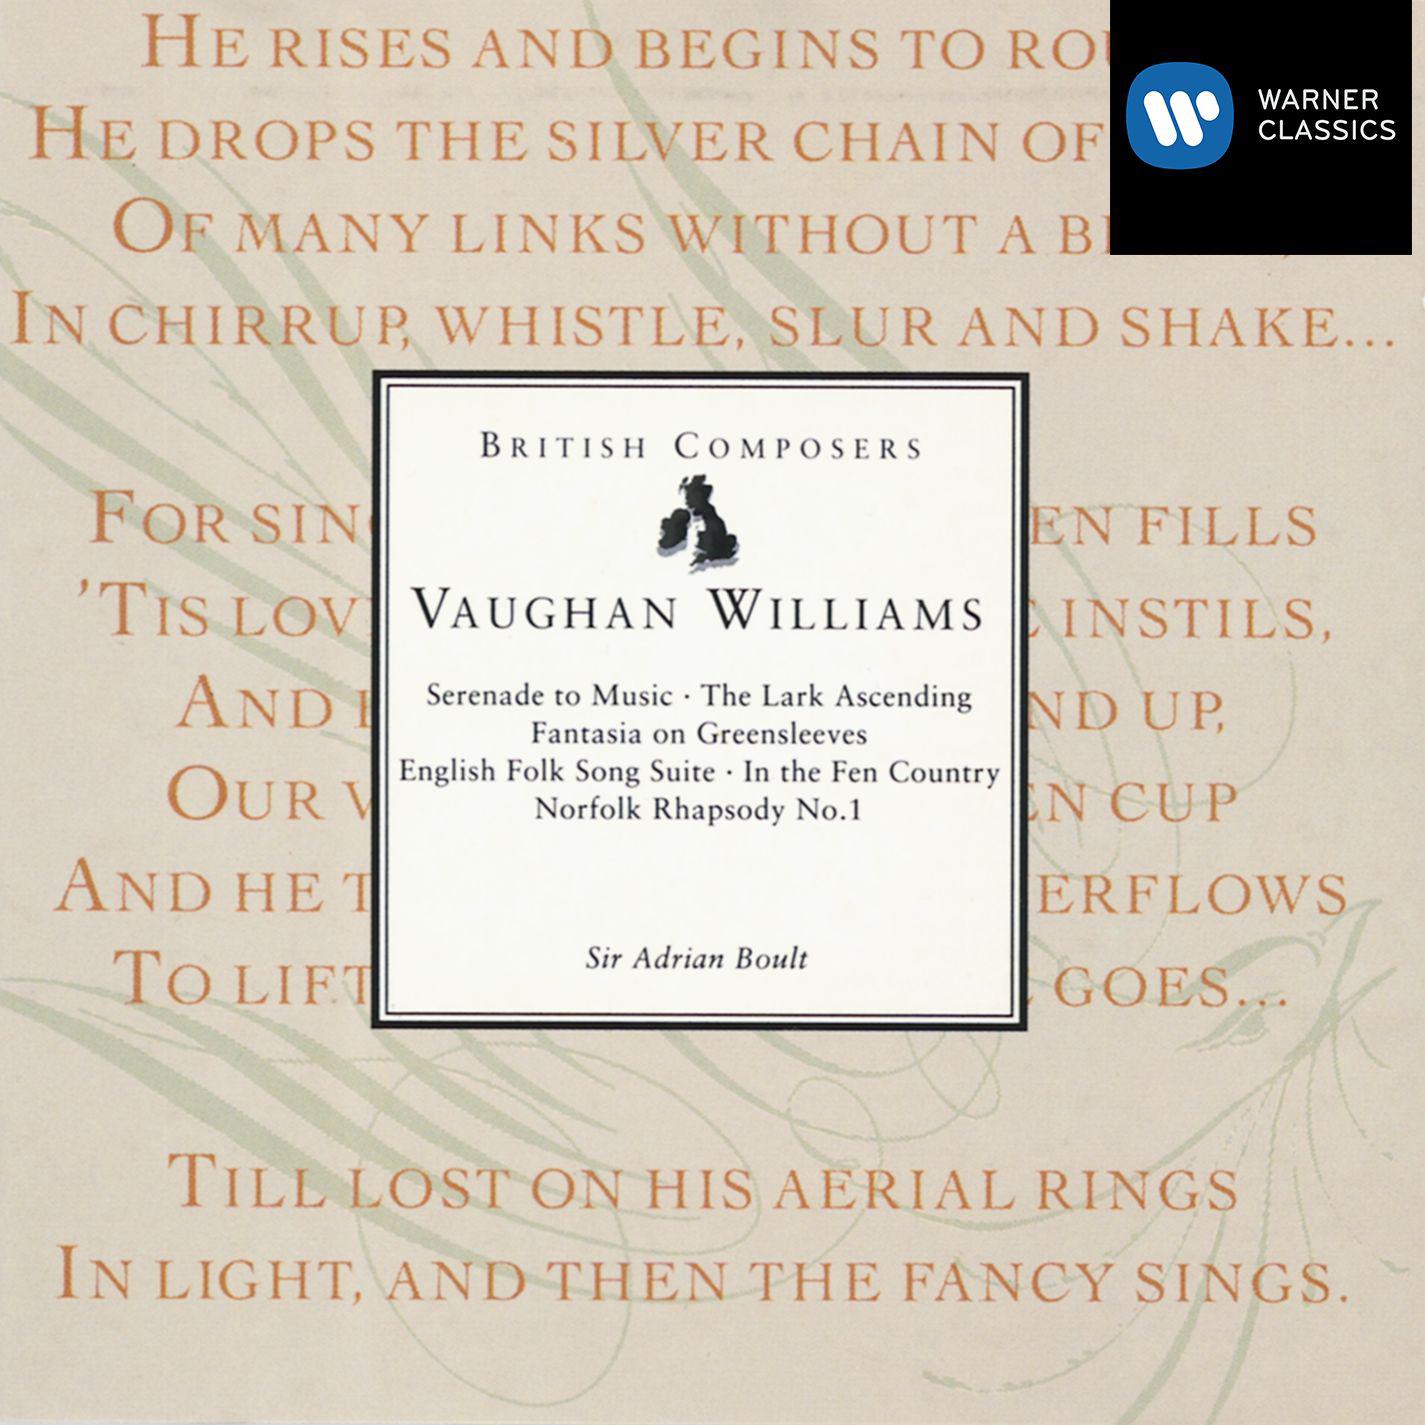 Vaughan Williams: Serenade to Music - The Lark Ascending